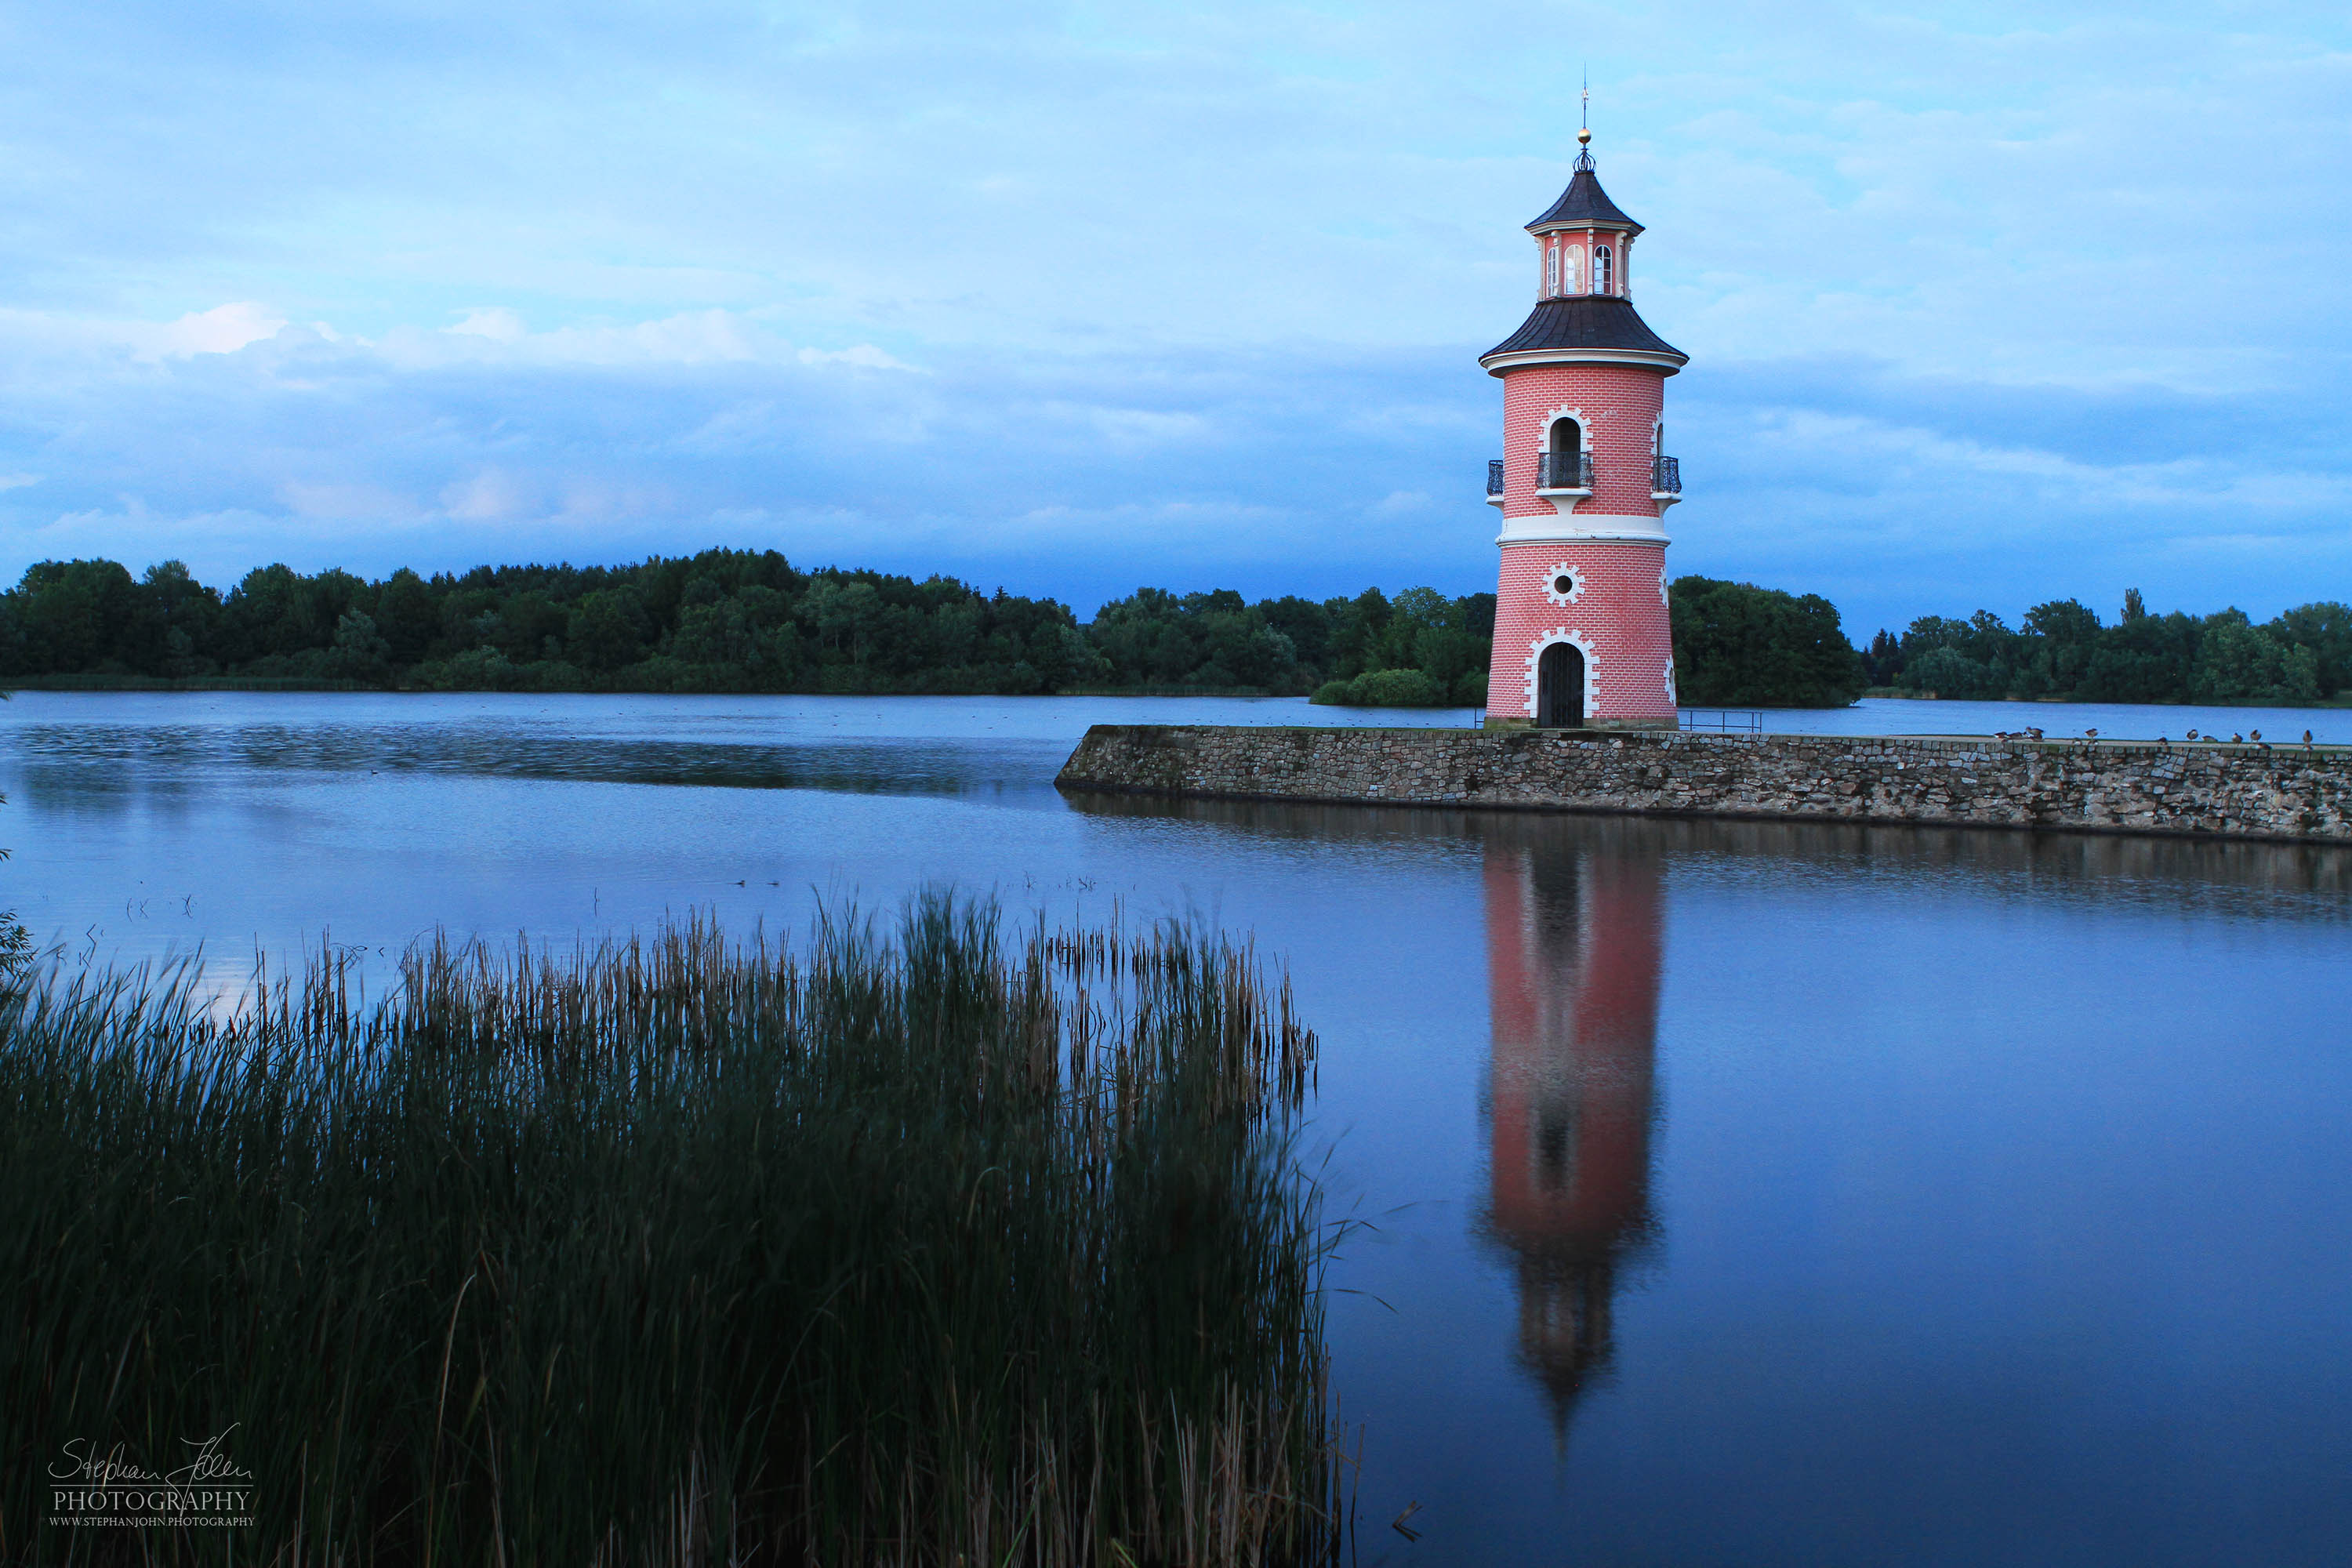 Der Leuchtturm in Moritzburg ist ein Binnenleuchtturm in Sachsen. Der Staffagebau entstand im späten 18. Jahrhundert als Teil einer Kulisse für nachgestellte Seeschlachten. Er ist der einzige für diesen Zweck gebaute Leuchtturm in Deutschland und gleichzeitig einer der ältesten Binnenleuchttürme der Bundesrepublik.